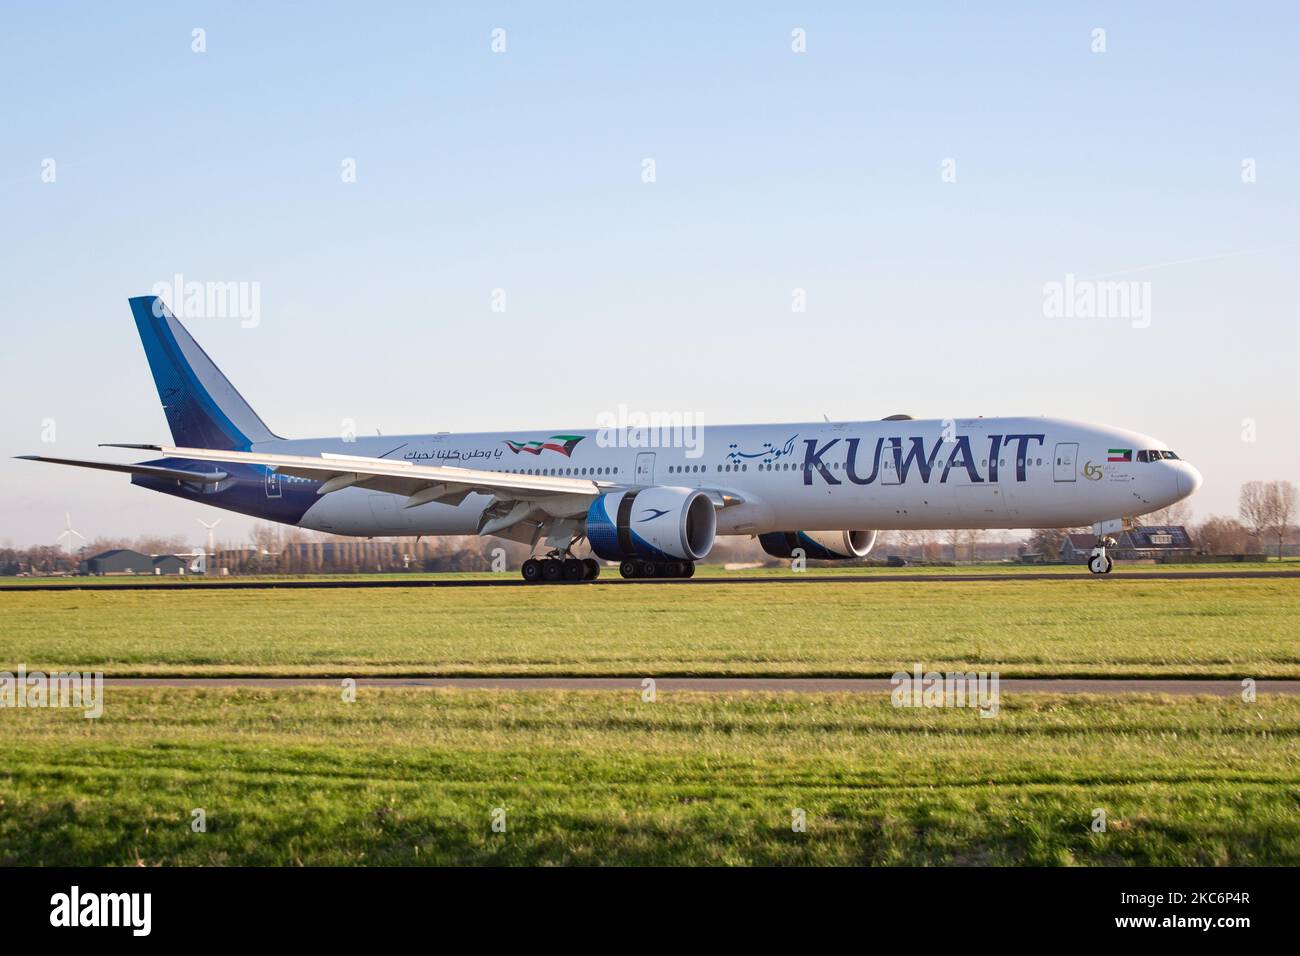 Kuwait Airways aeromobile Boeing 777-300 visto all'arrivo in volo e atterraggio a Amsterdam Aeroporto Internazionale Schiphol AMS EHAM. L'aereo a fusoliera larga Boeing B777, in particolare il modello Boeing 777-369(ER), ha la registrazione 9K-AOF, il nome al-Ahmadiya ed è alimentato da motori a reazione 2x GE. Kuwait Airways KU KAC KUWAITI è il portatore di bandiera nazionale dello Stato del Kuwait e una flotta di 30 aerei che collegano il Medio Oriente con l'Europa, l'America, il subcontinente indiano e l'Asia sudorientale. Kuwait Airways è membro della Arab Air Carriers Organization. Il traffico mondiale di passeggeri è diminuito durin Foto Stock